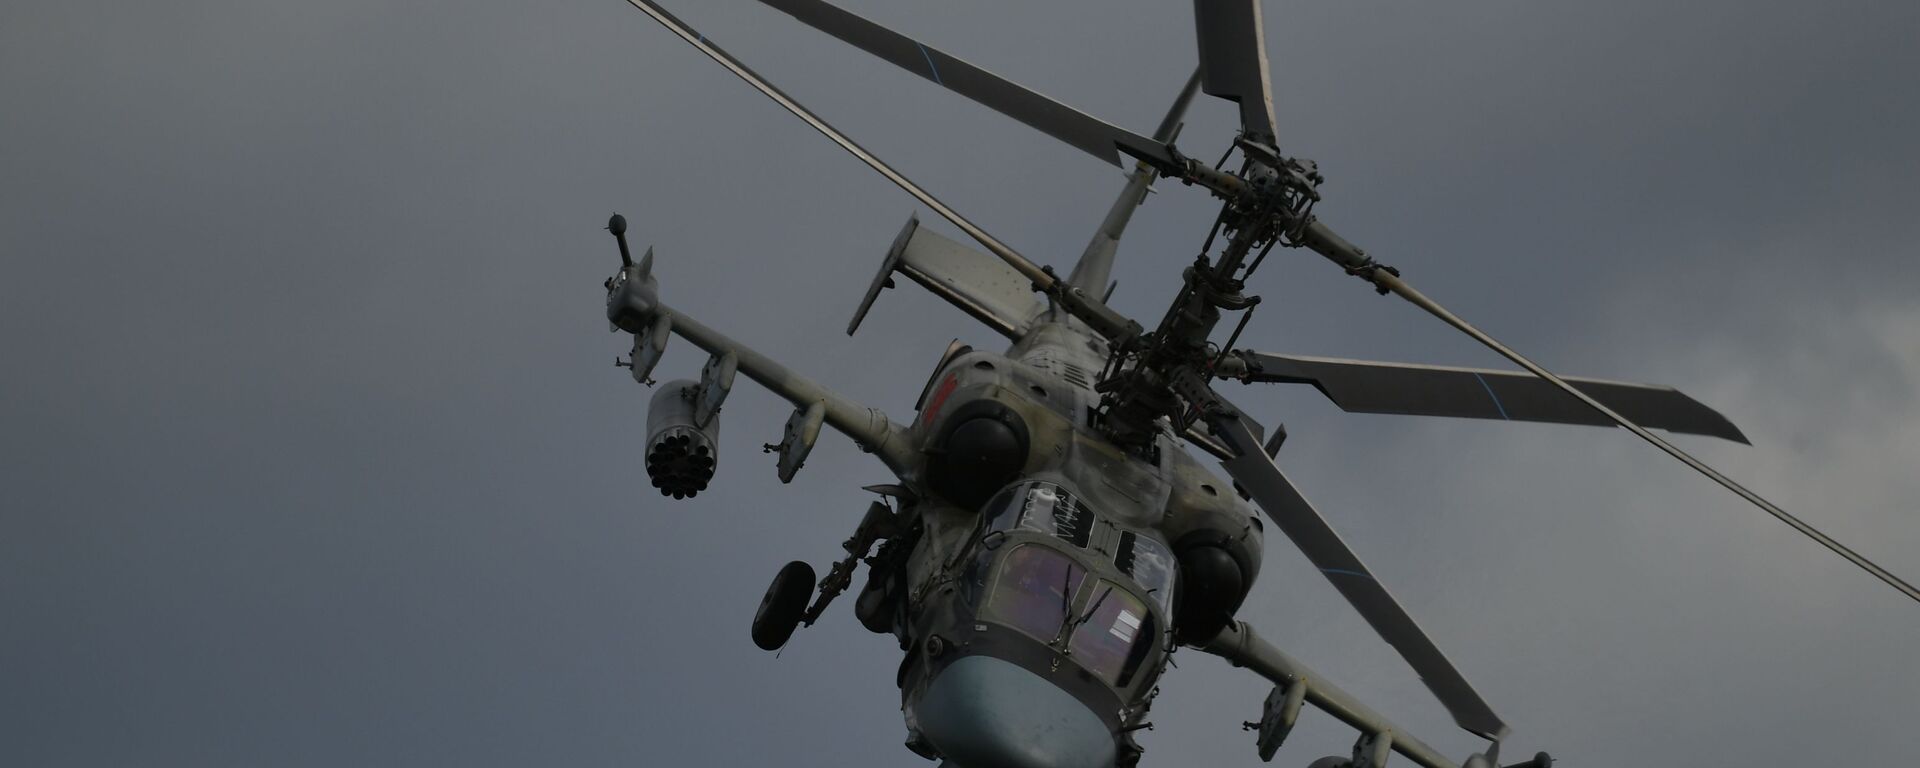 Хеликоптер Ка-52 Алигатор на V Међународном војно-техничком форуму Армија 2019 - Sputnik Србија, 1920, 10.02.2021